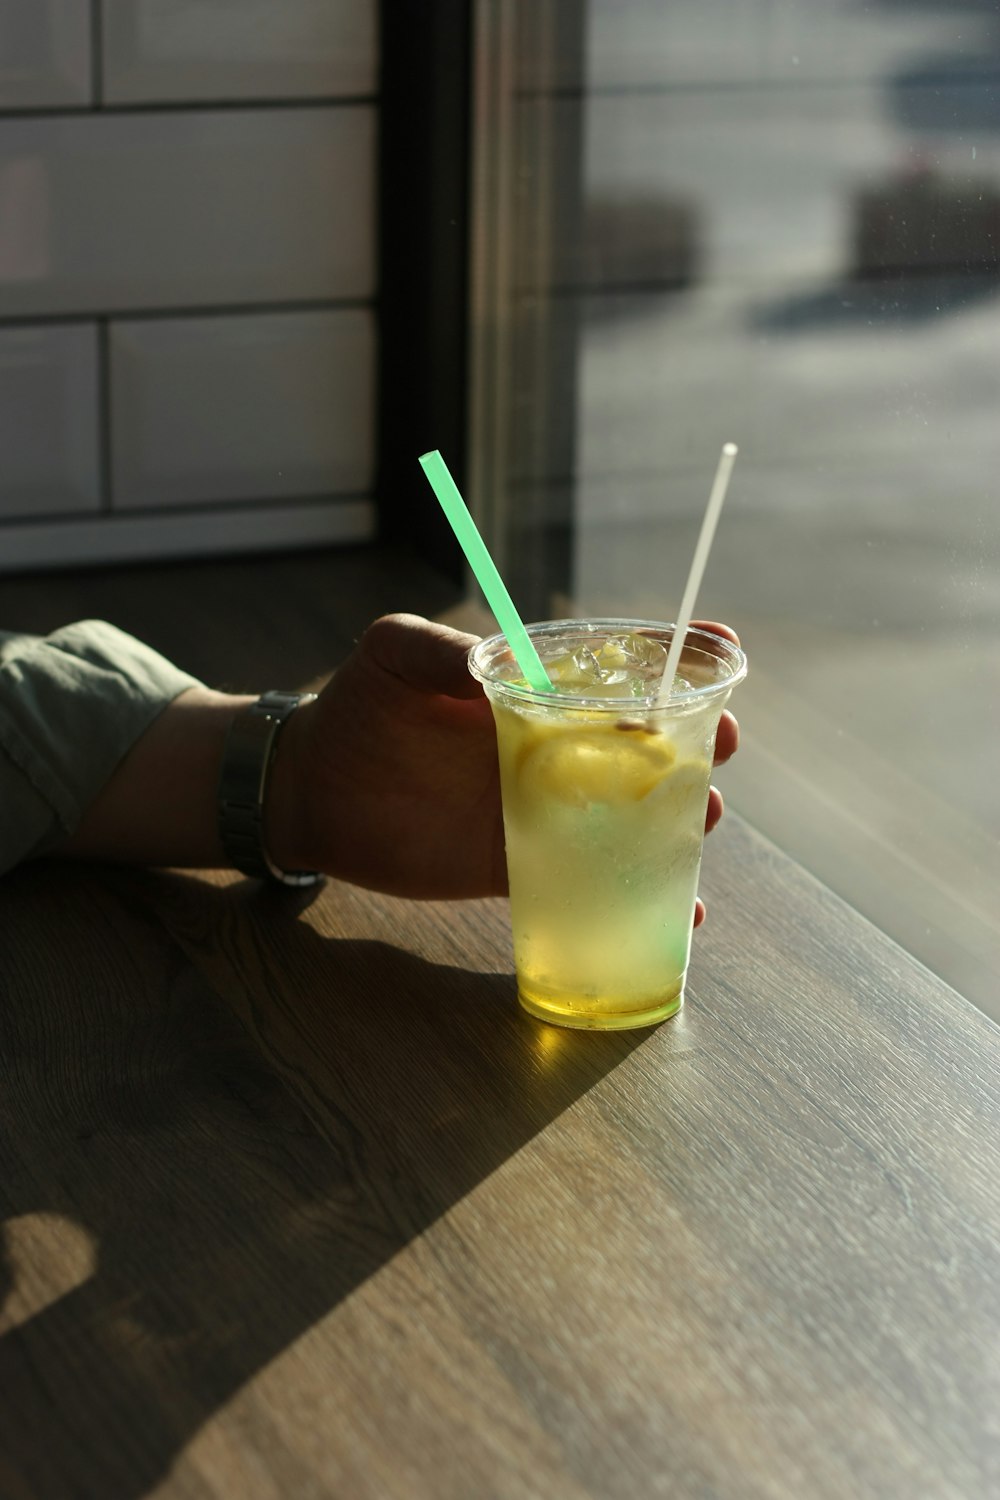 pessoa segurando copo transparente com líquido amarelo